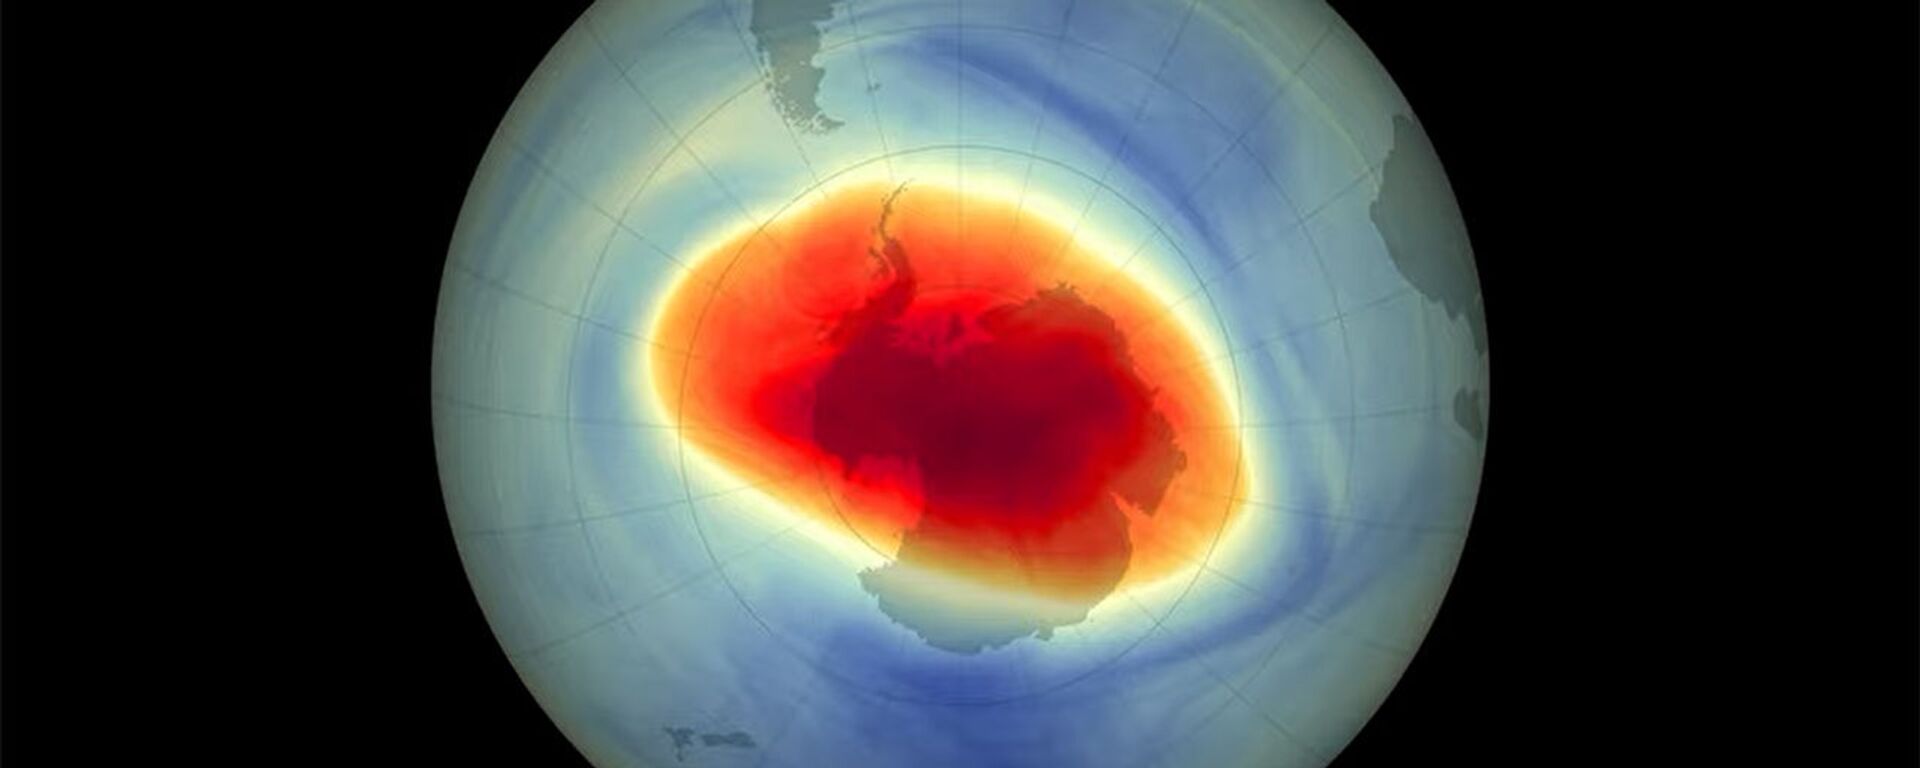 Антарктиданын үстүндөгү коркунучтуу озон тешиги. NASA тарткан жаңы видео - Sputnik Кыргызстан, 1920, 16.11.2021